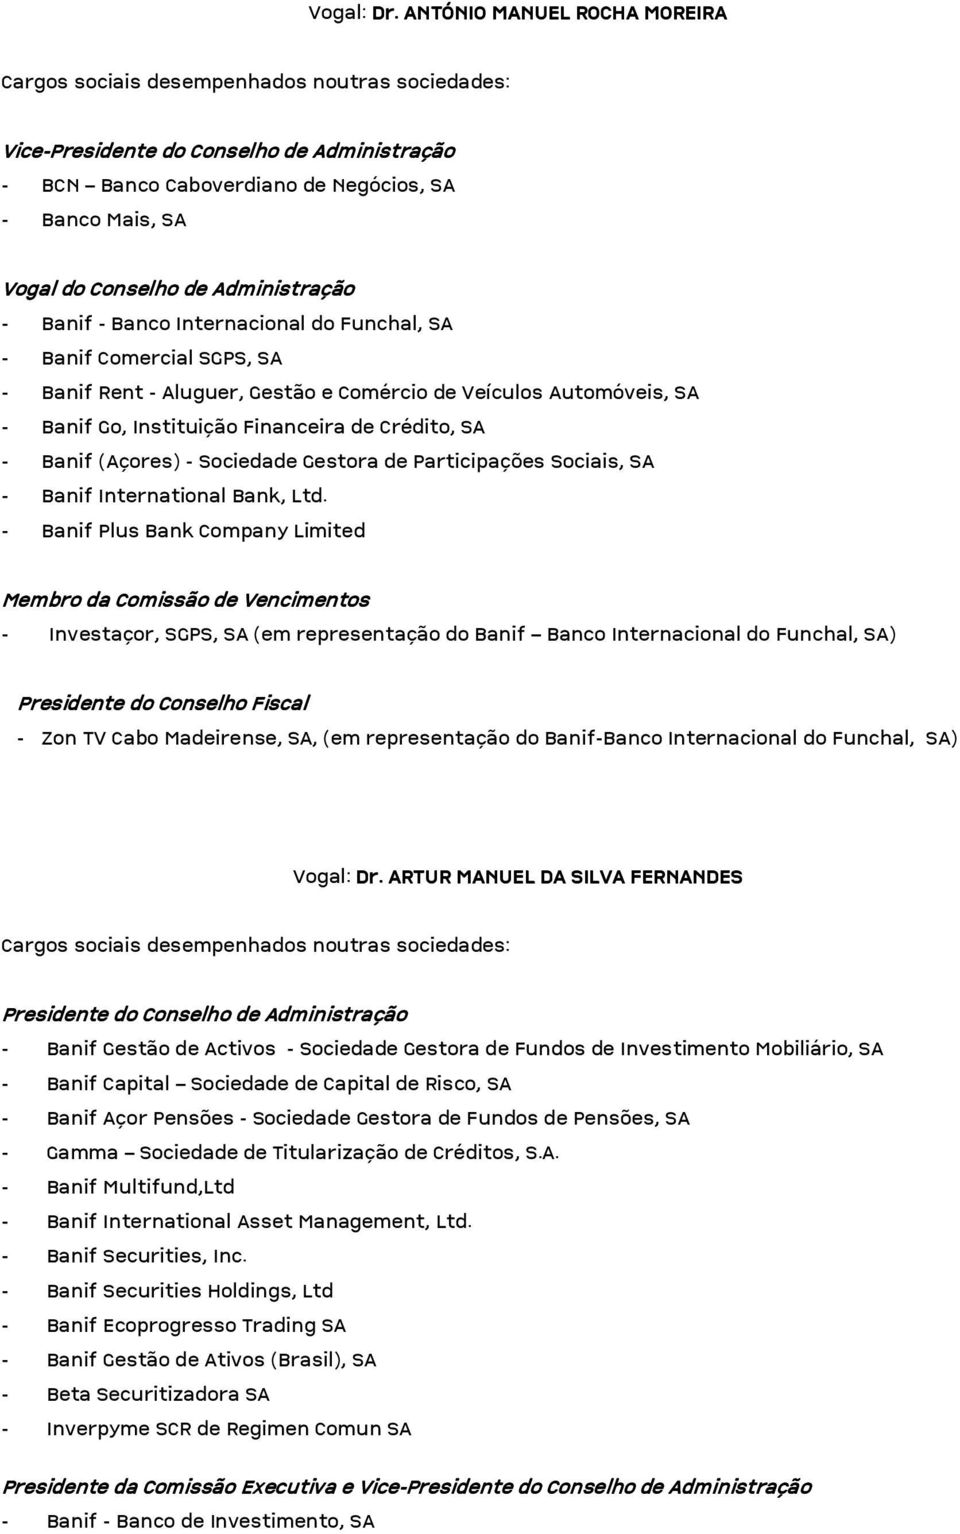 Automóveis, SA - Banif Go, Instituição Financeira de Crédito, SA - Banif (Açores) - Sociedade Gestora de Participações Sociais, SA - Banif International Bank, Ltd.